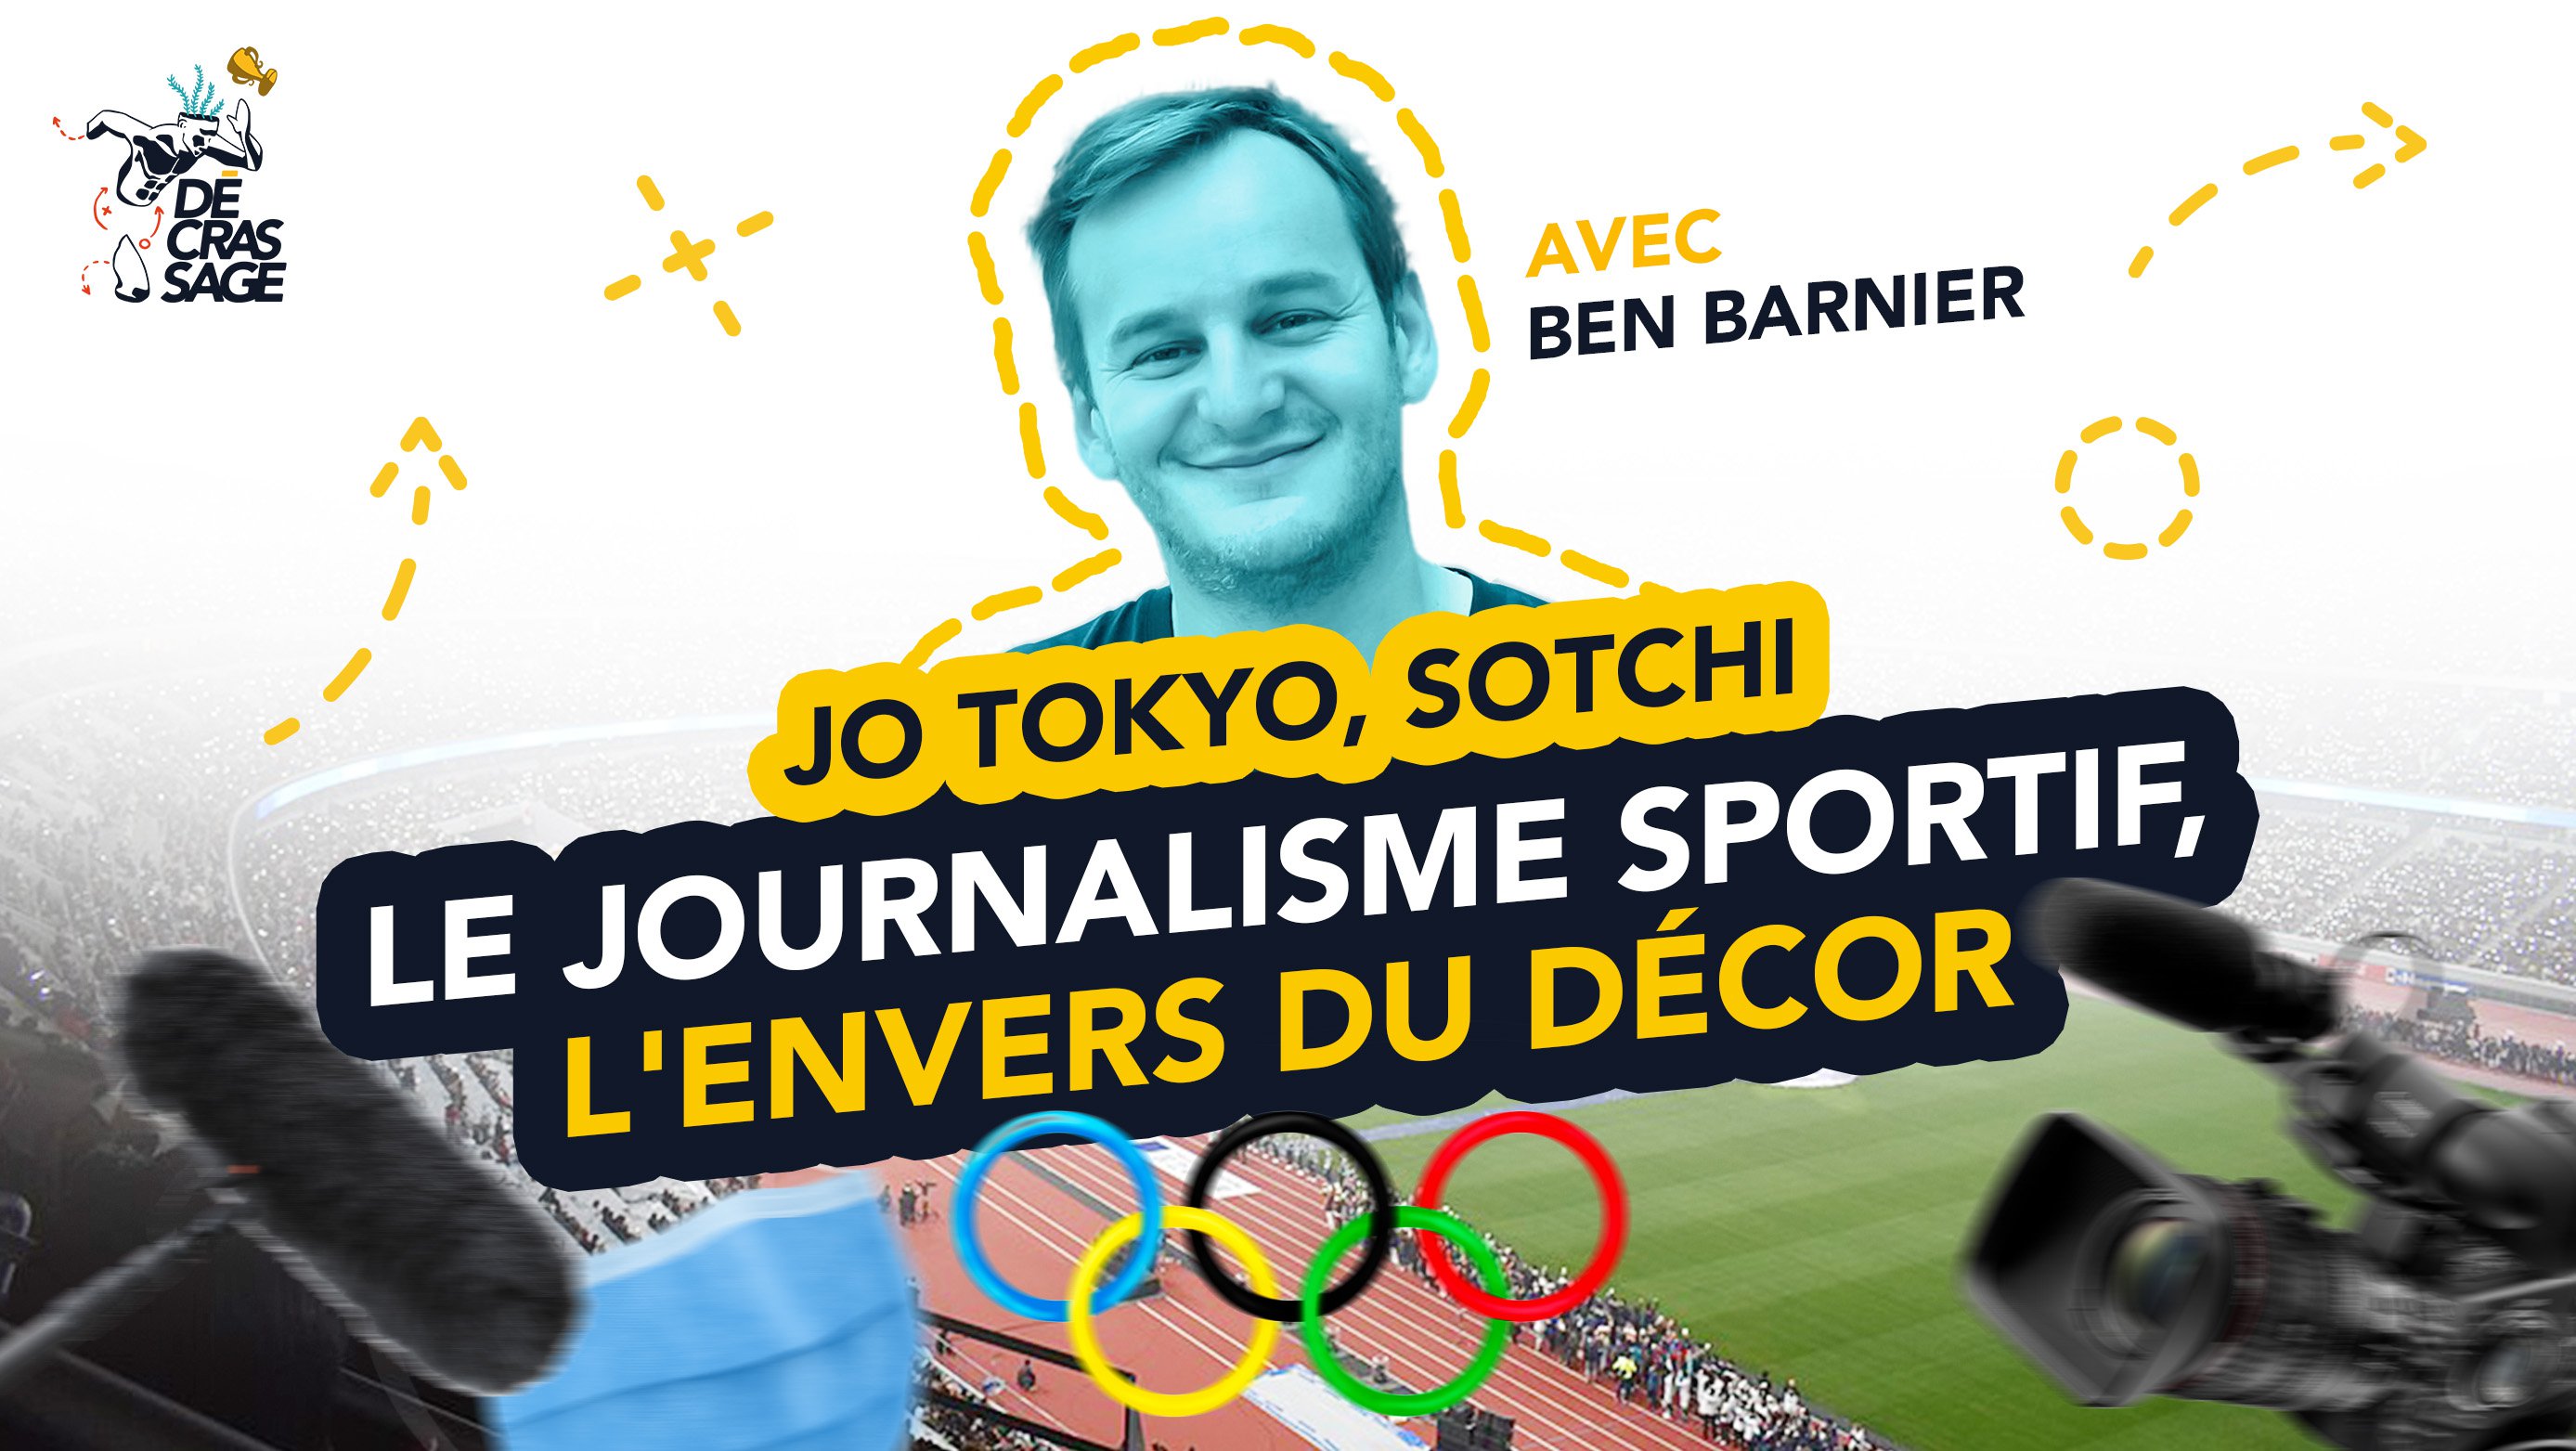 Olympijské hry v Tokiu, Soči: Sportovní žurnalistika a zákulisí